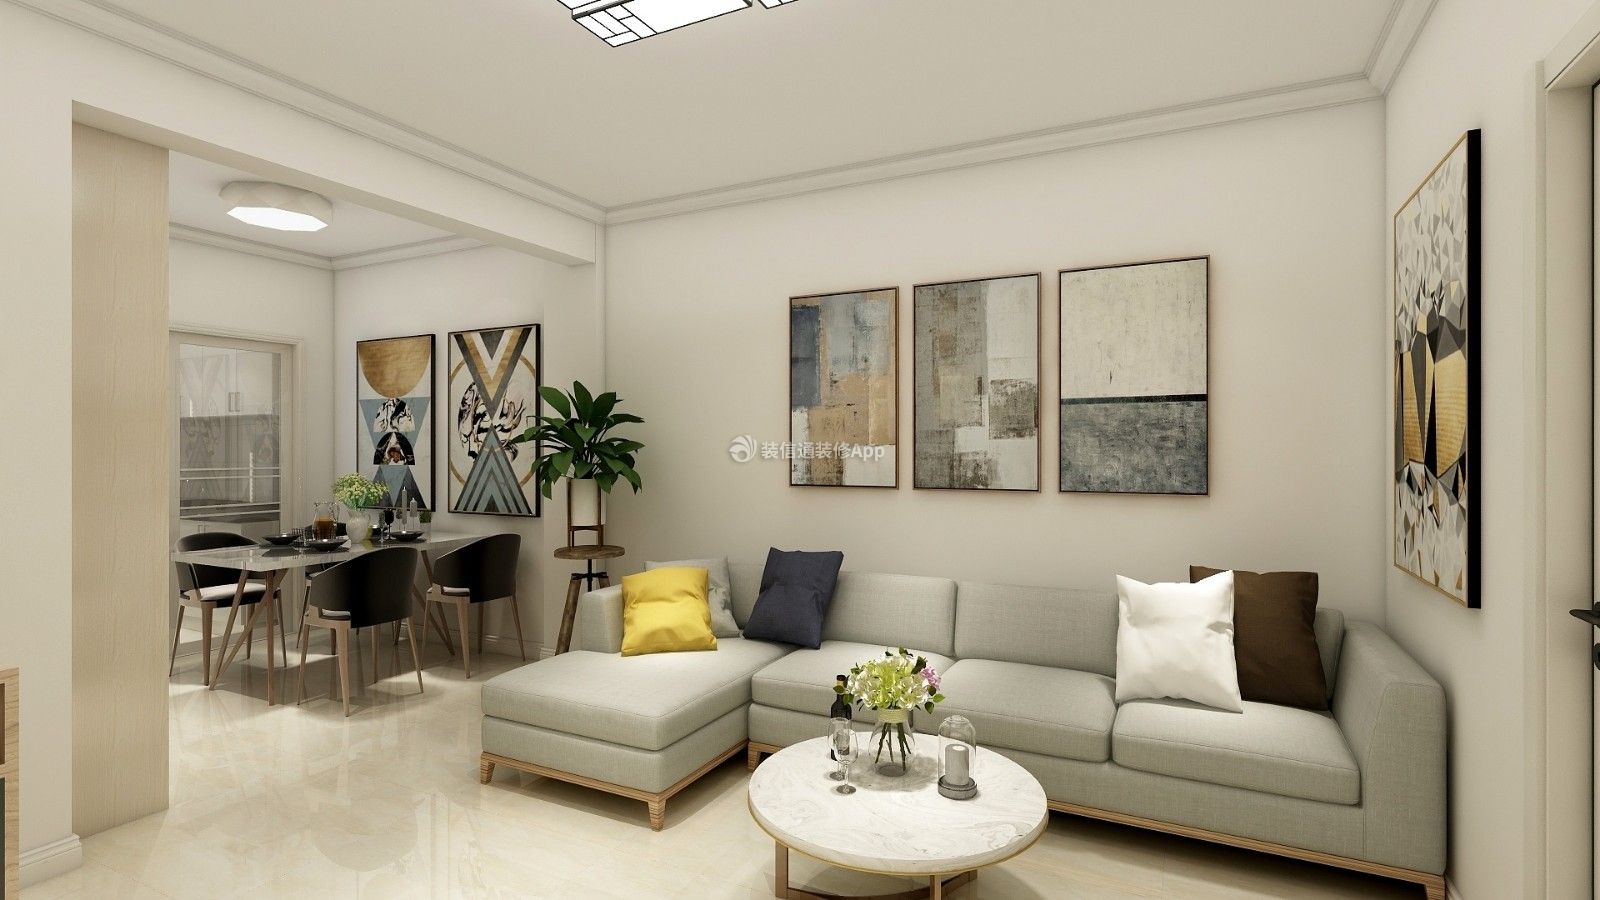 现代沙发背景墙装修效果图片 现代沙发背景墙 2020现代沙发背景墙图片 